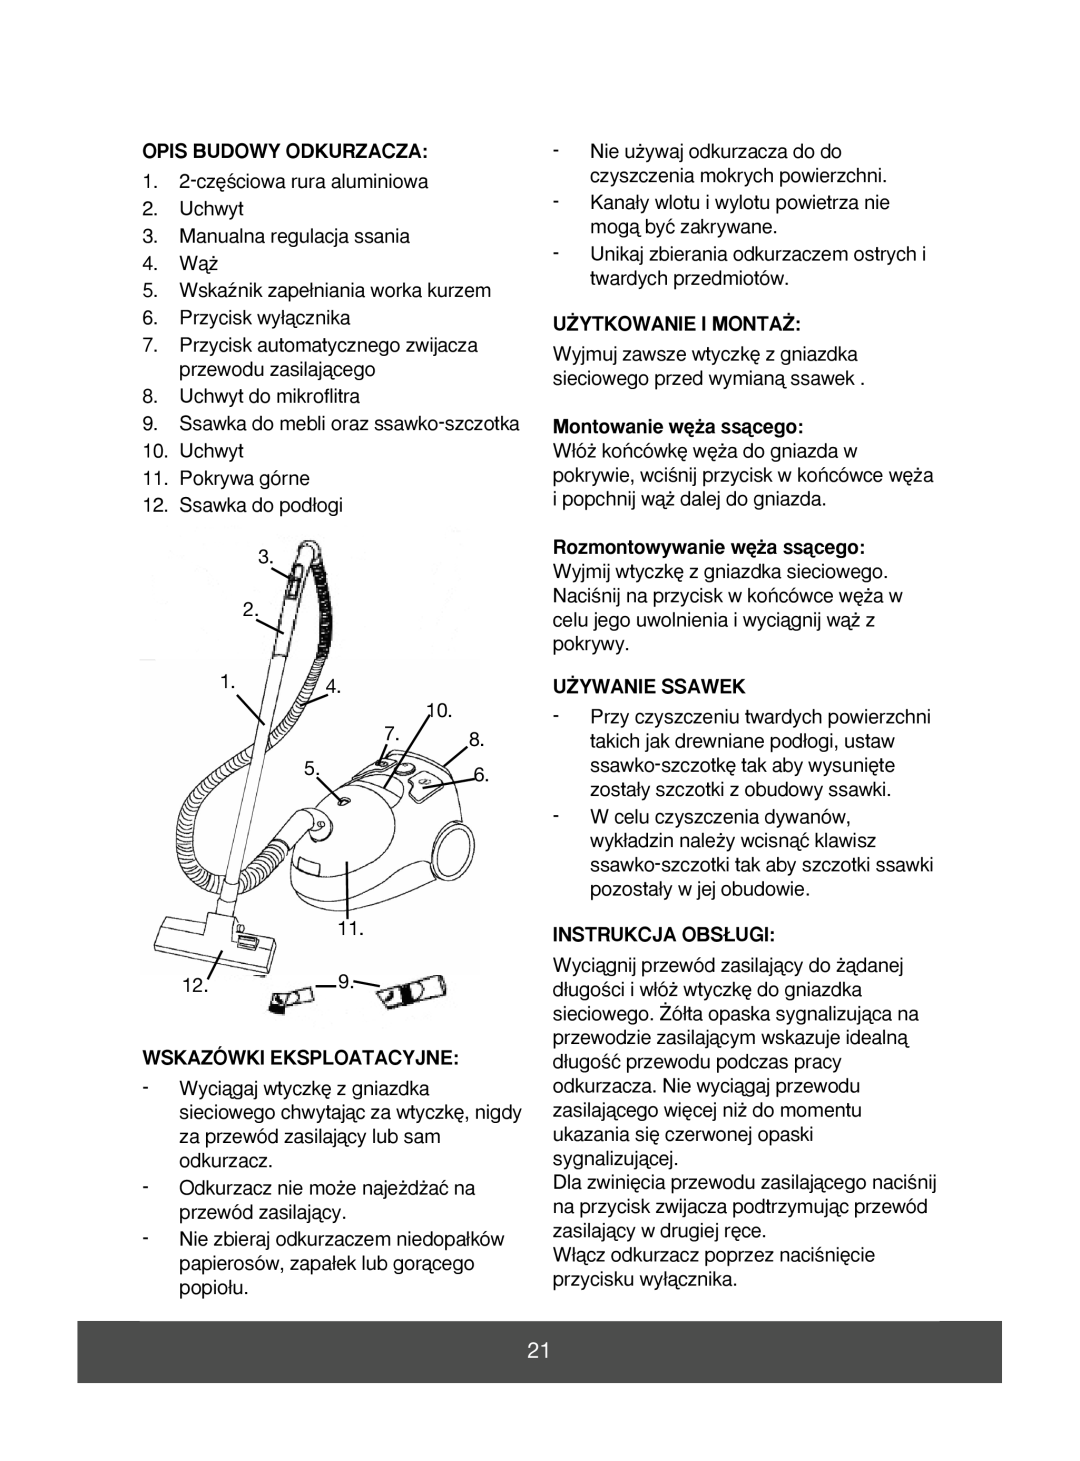 Melissa 640-056 manual Opis Budowy Odkurzacza, Wskazówki Eksploatacyjne, U˚Ytkowanie I Monta˚, Montowanie w´˝a ssàcego 